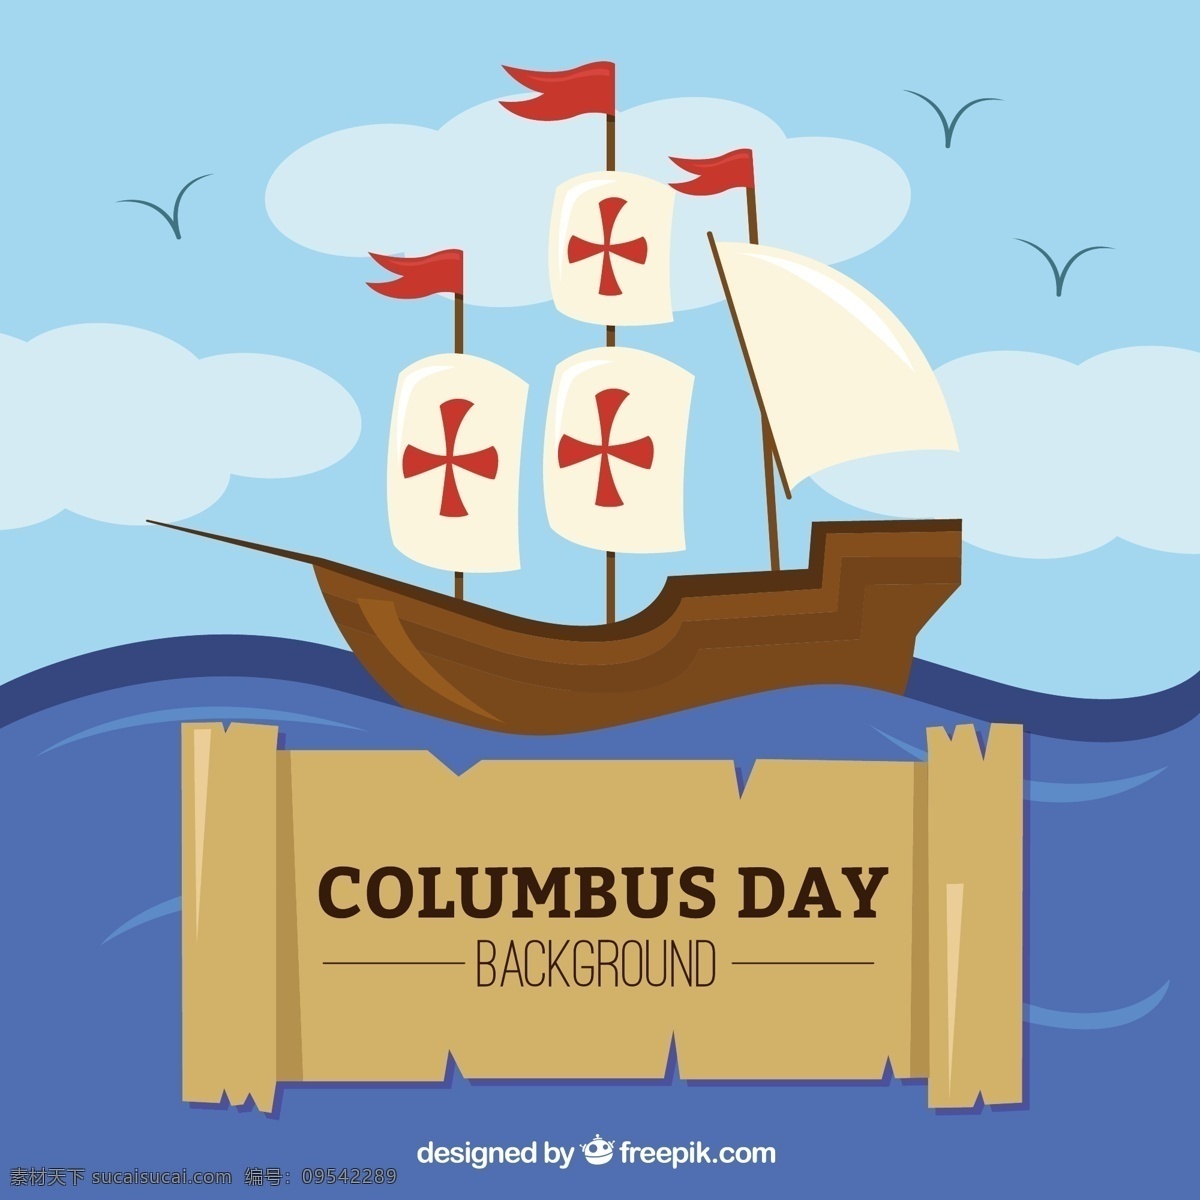 哥伦布 日 背景 介绍 海 庆典 节日 海洋 美国 历史 羊皮纸 文化 西班牙 日庆祝 容器 发现 国家